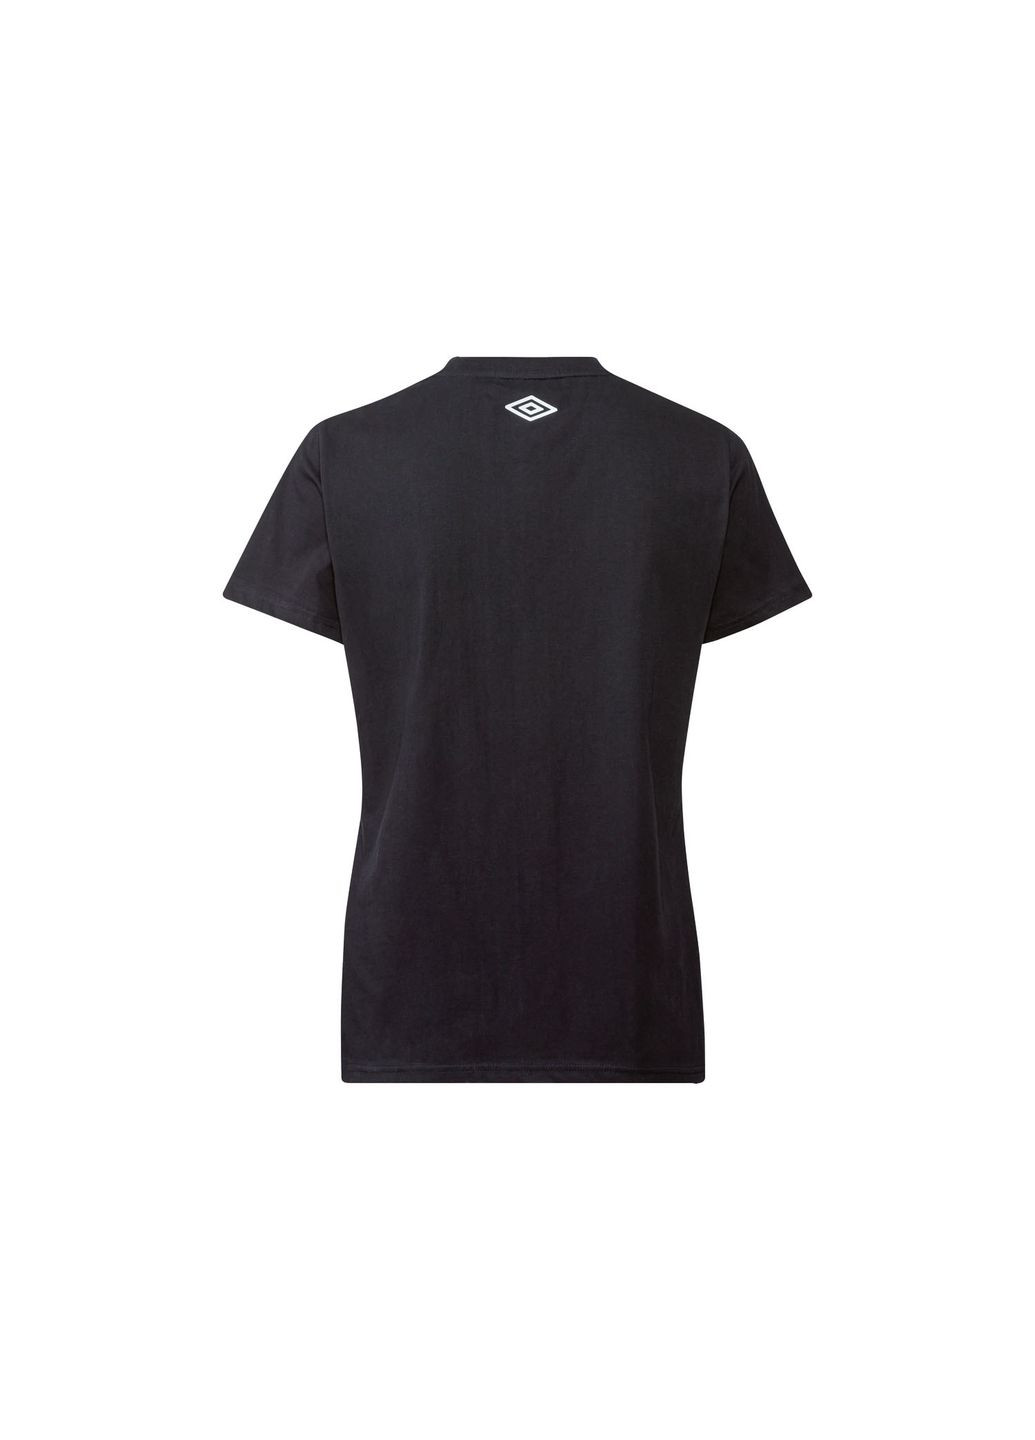 Чорна демісезон футболка з логотипом для жінки 401118_2107 чорний Umbro